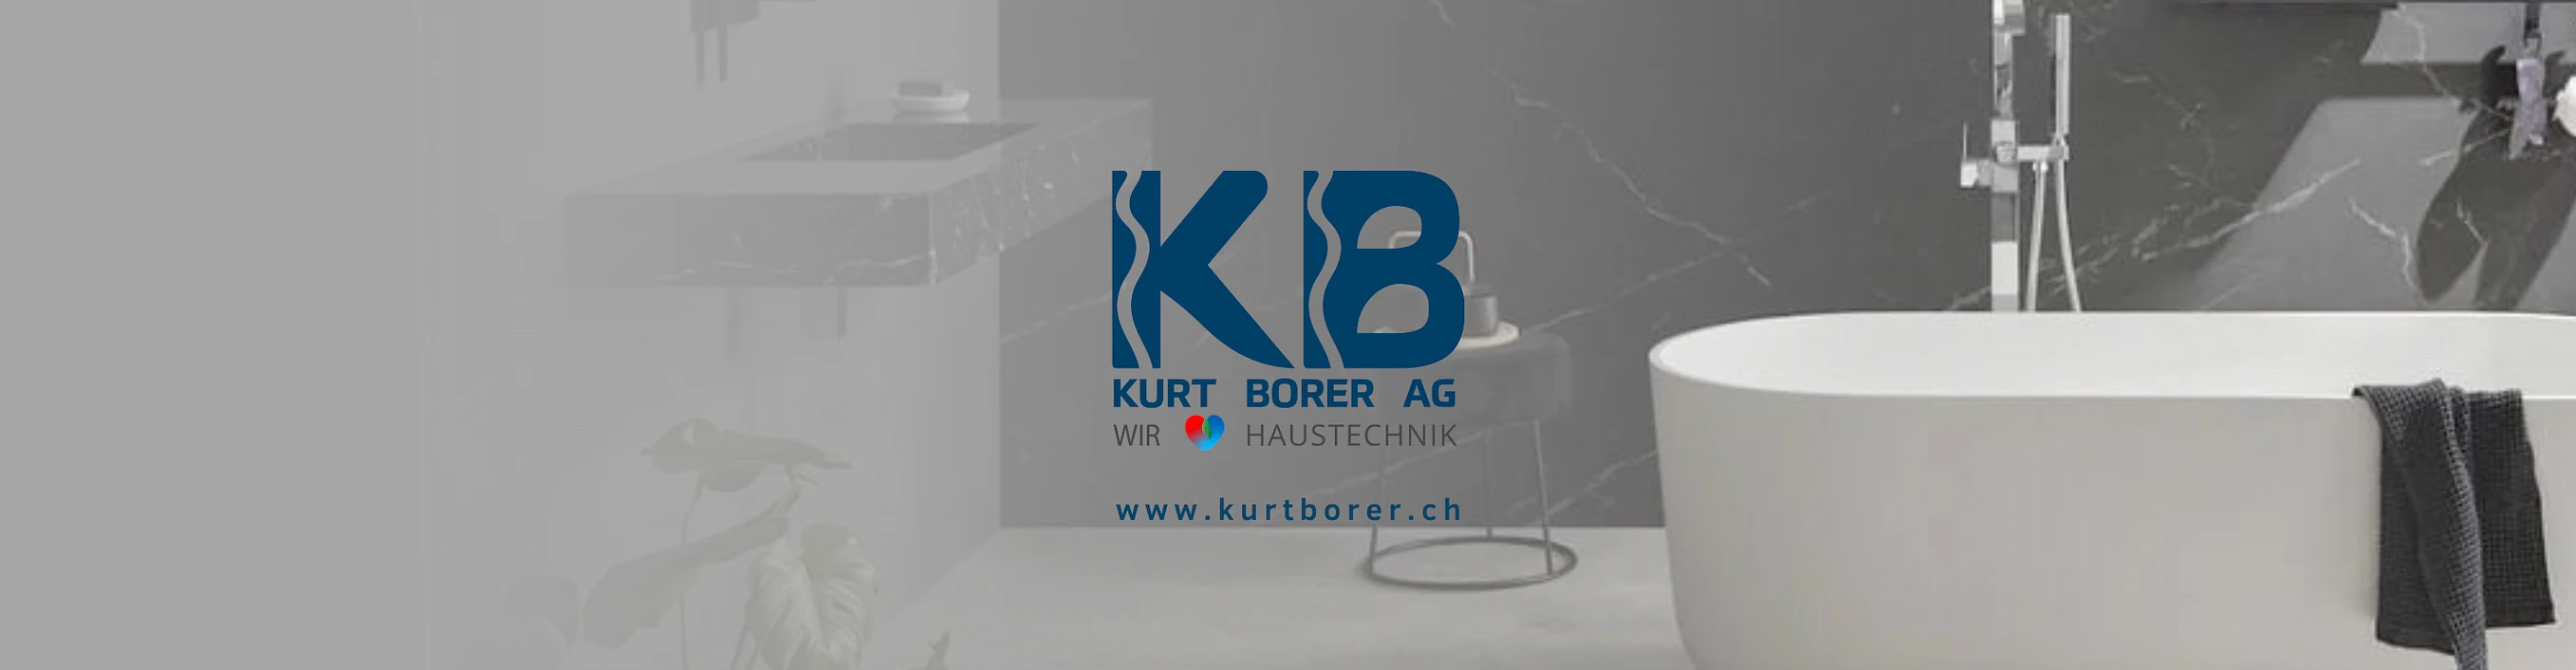 Kurt Borer AG